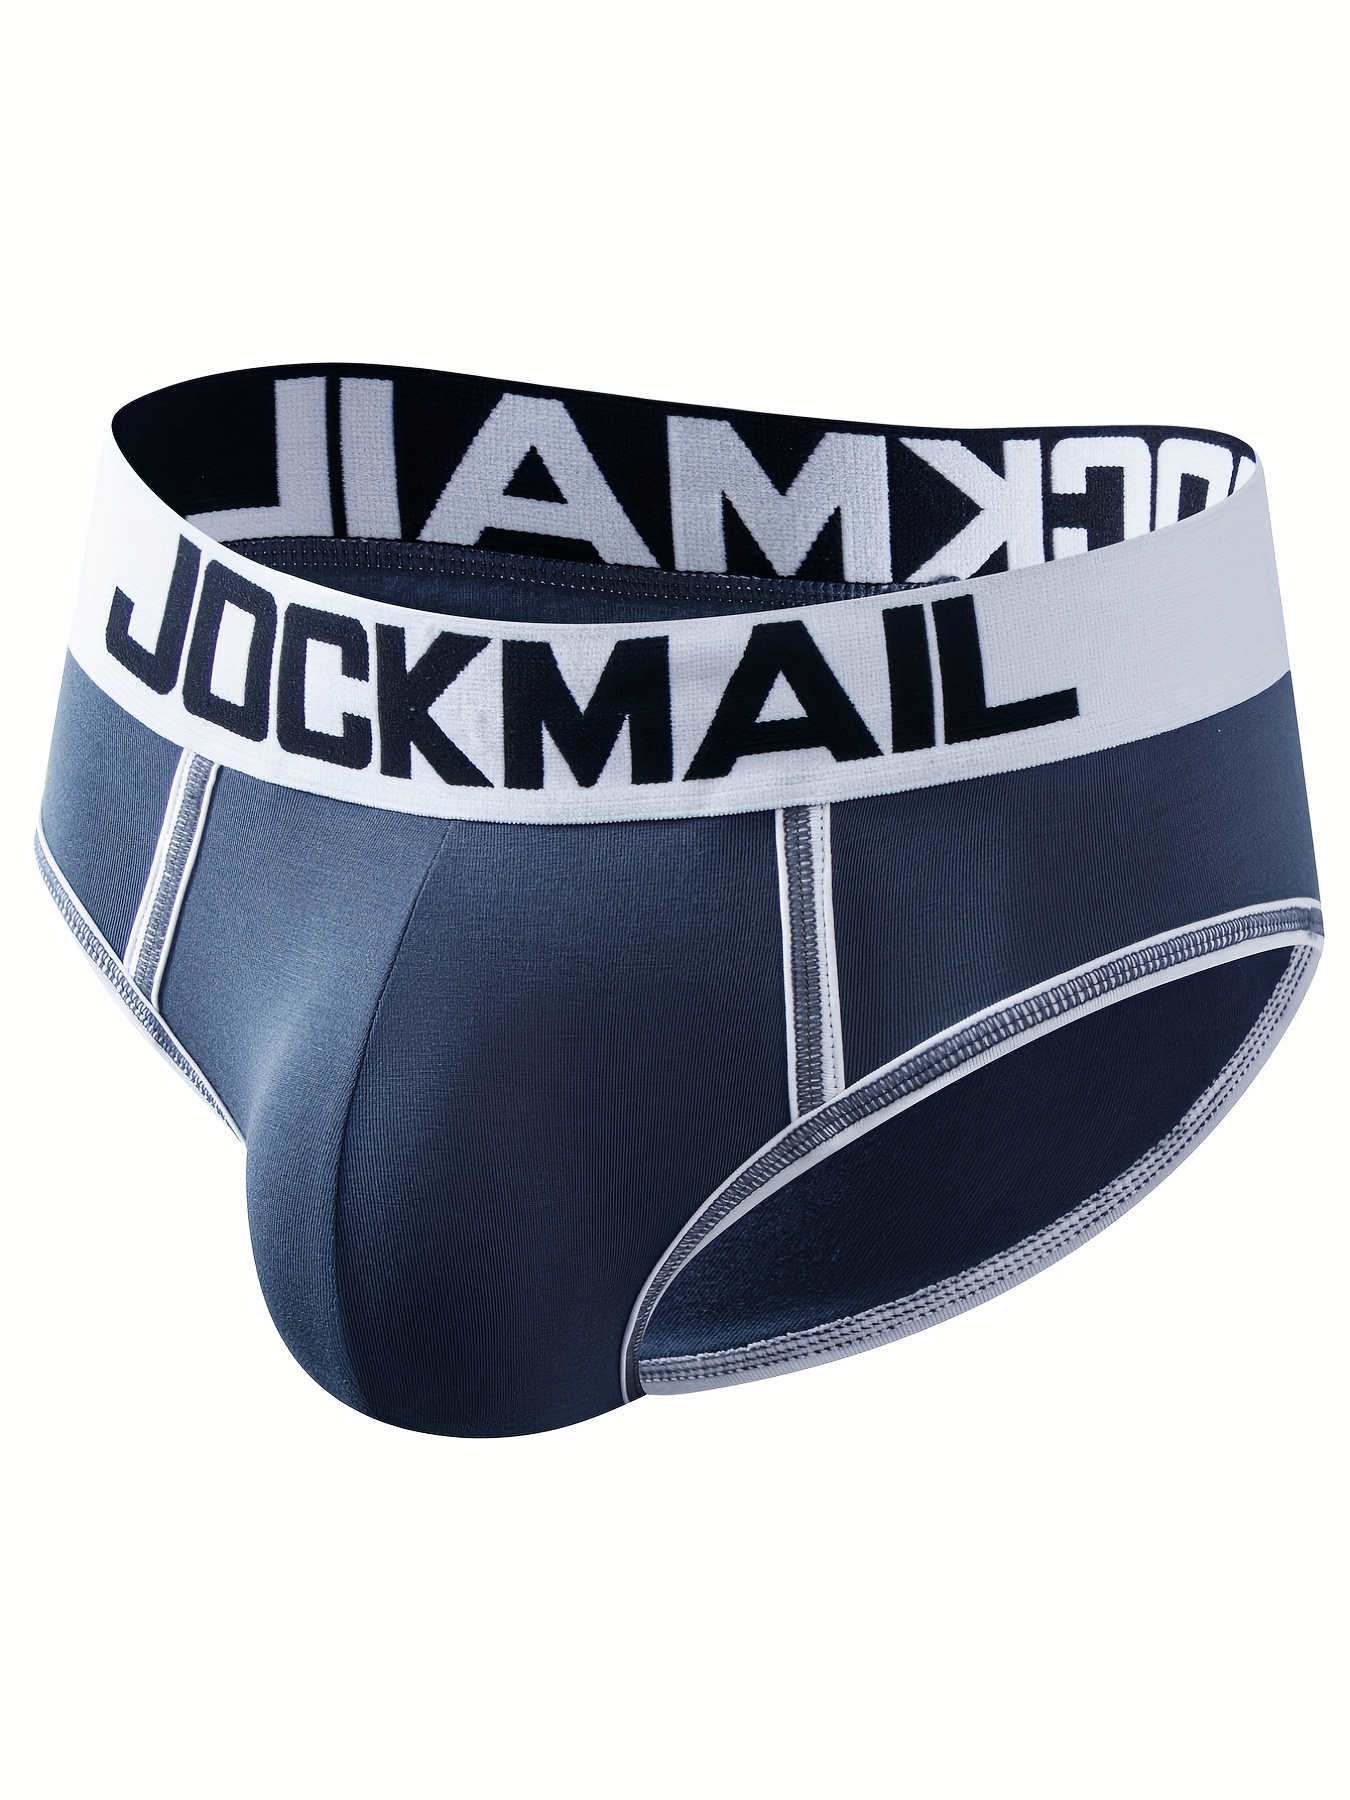 JOCKMAIL C-ring Boxer